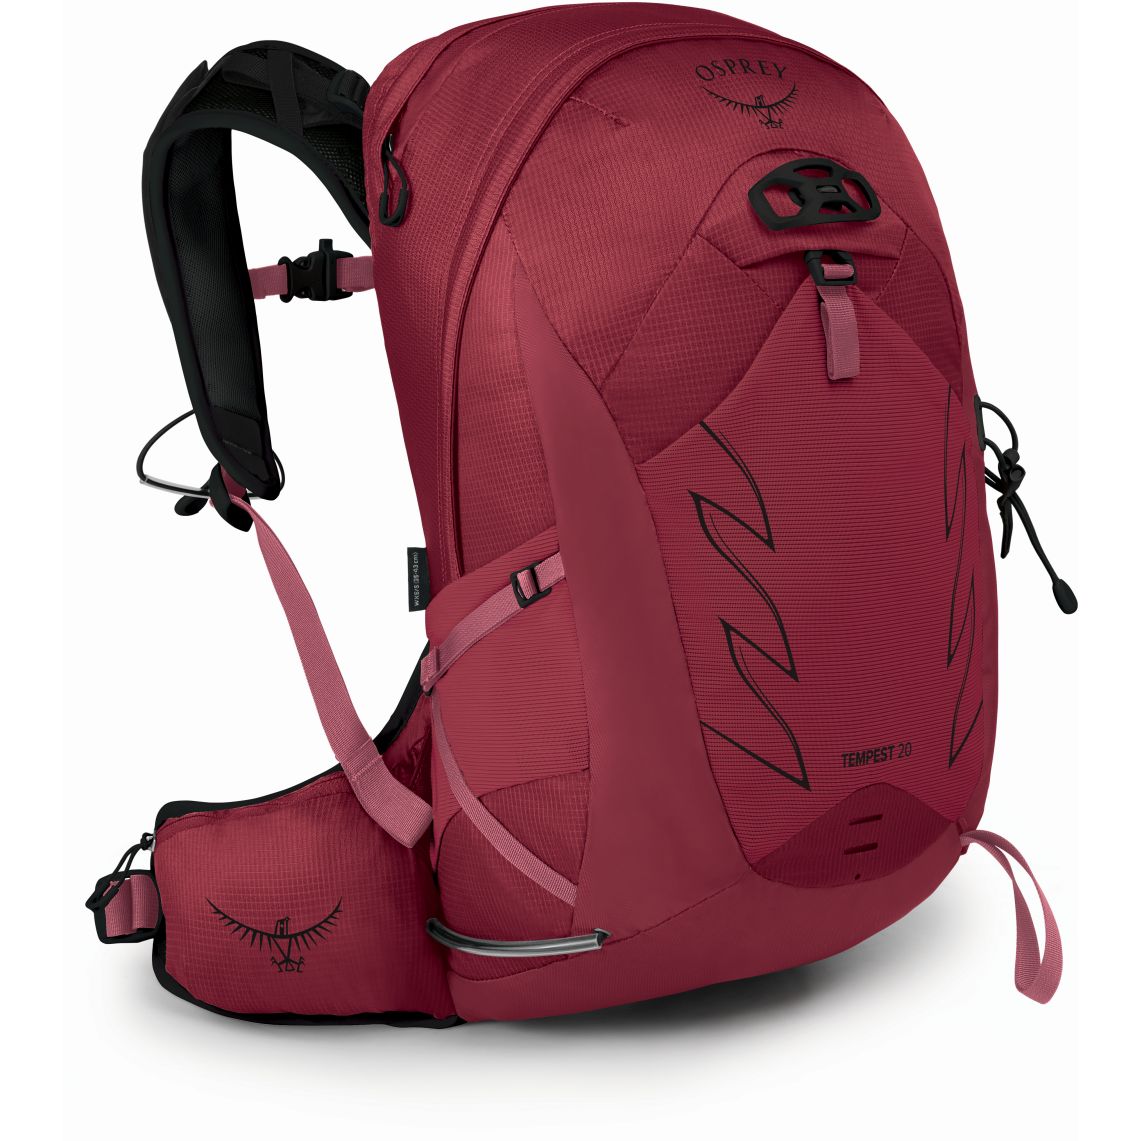 Produktbild von Osprey Tempest 20 Rucksack Damen - Kakio Pink - XS/S